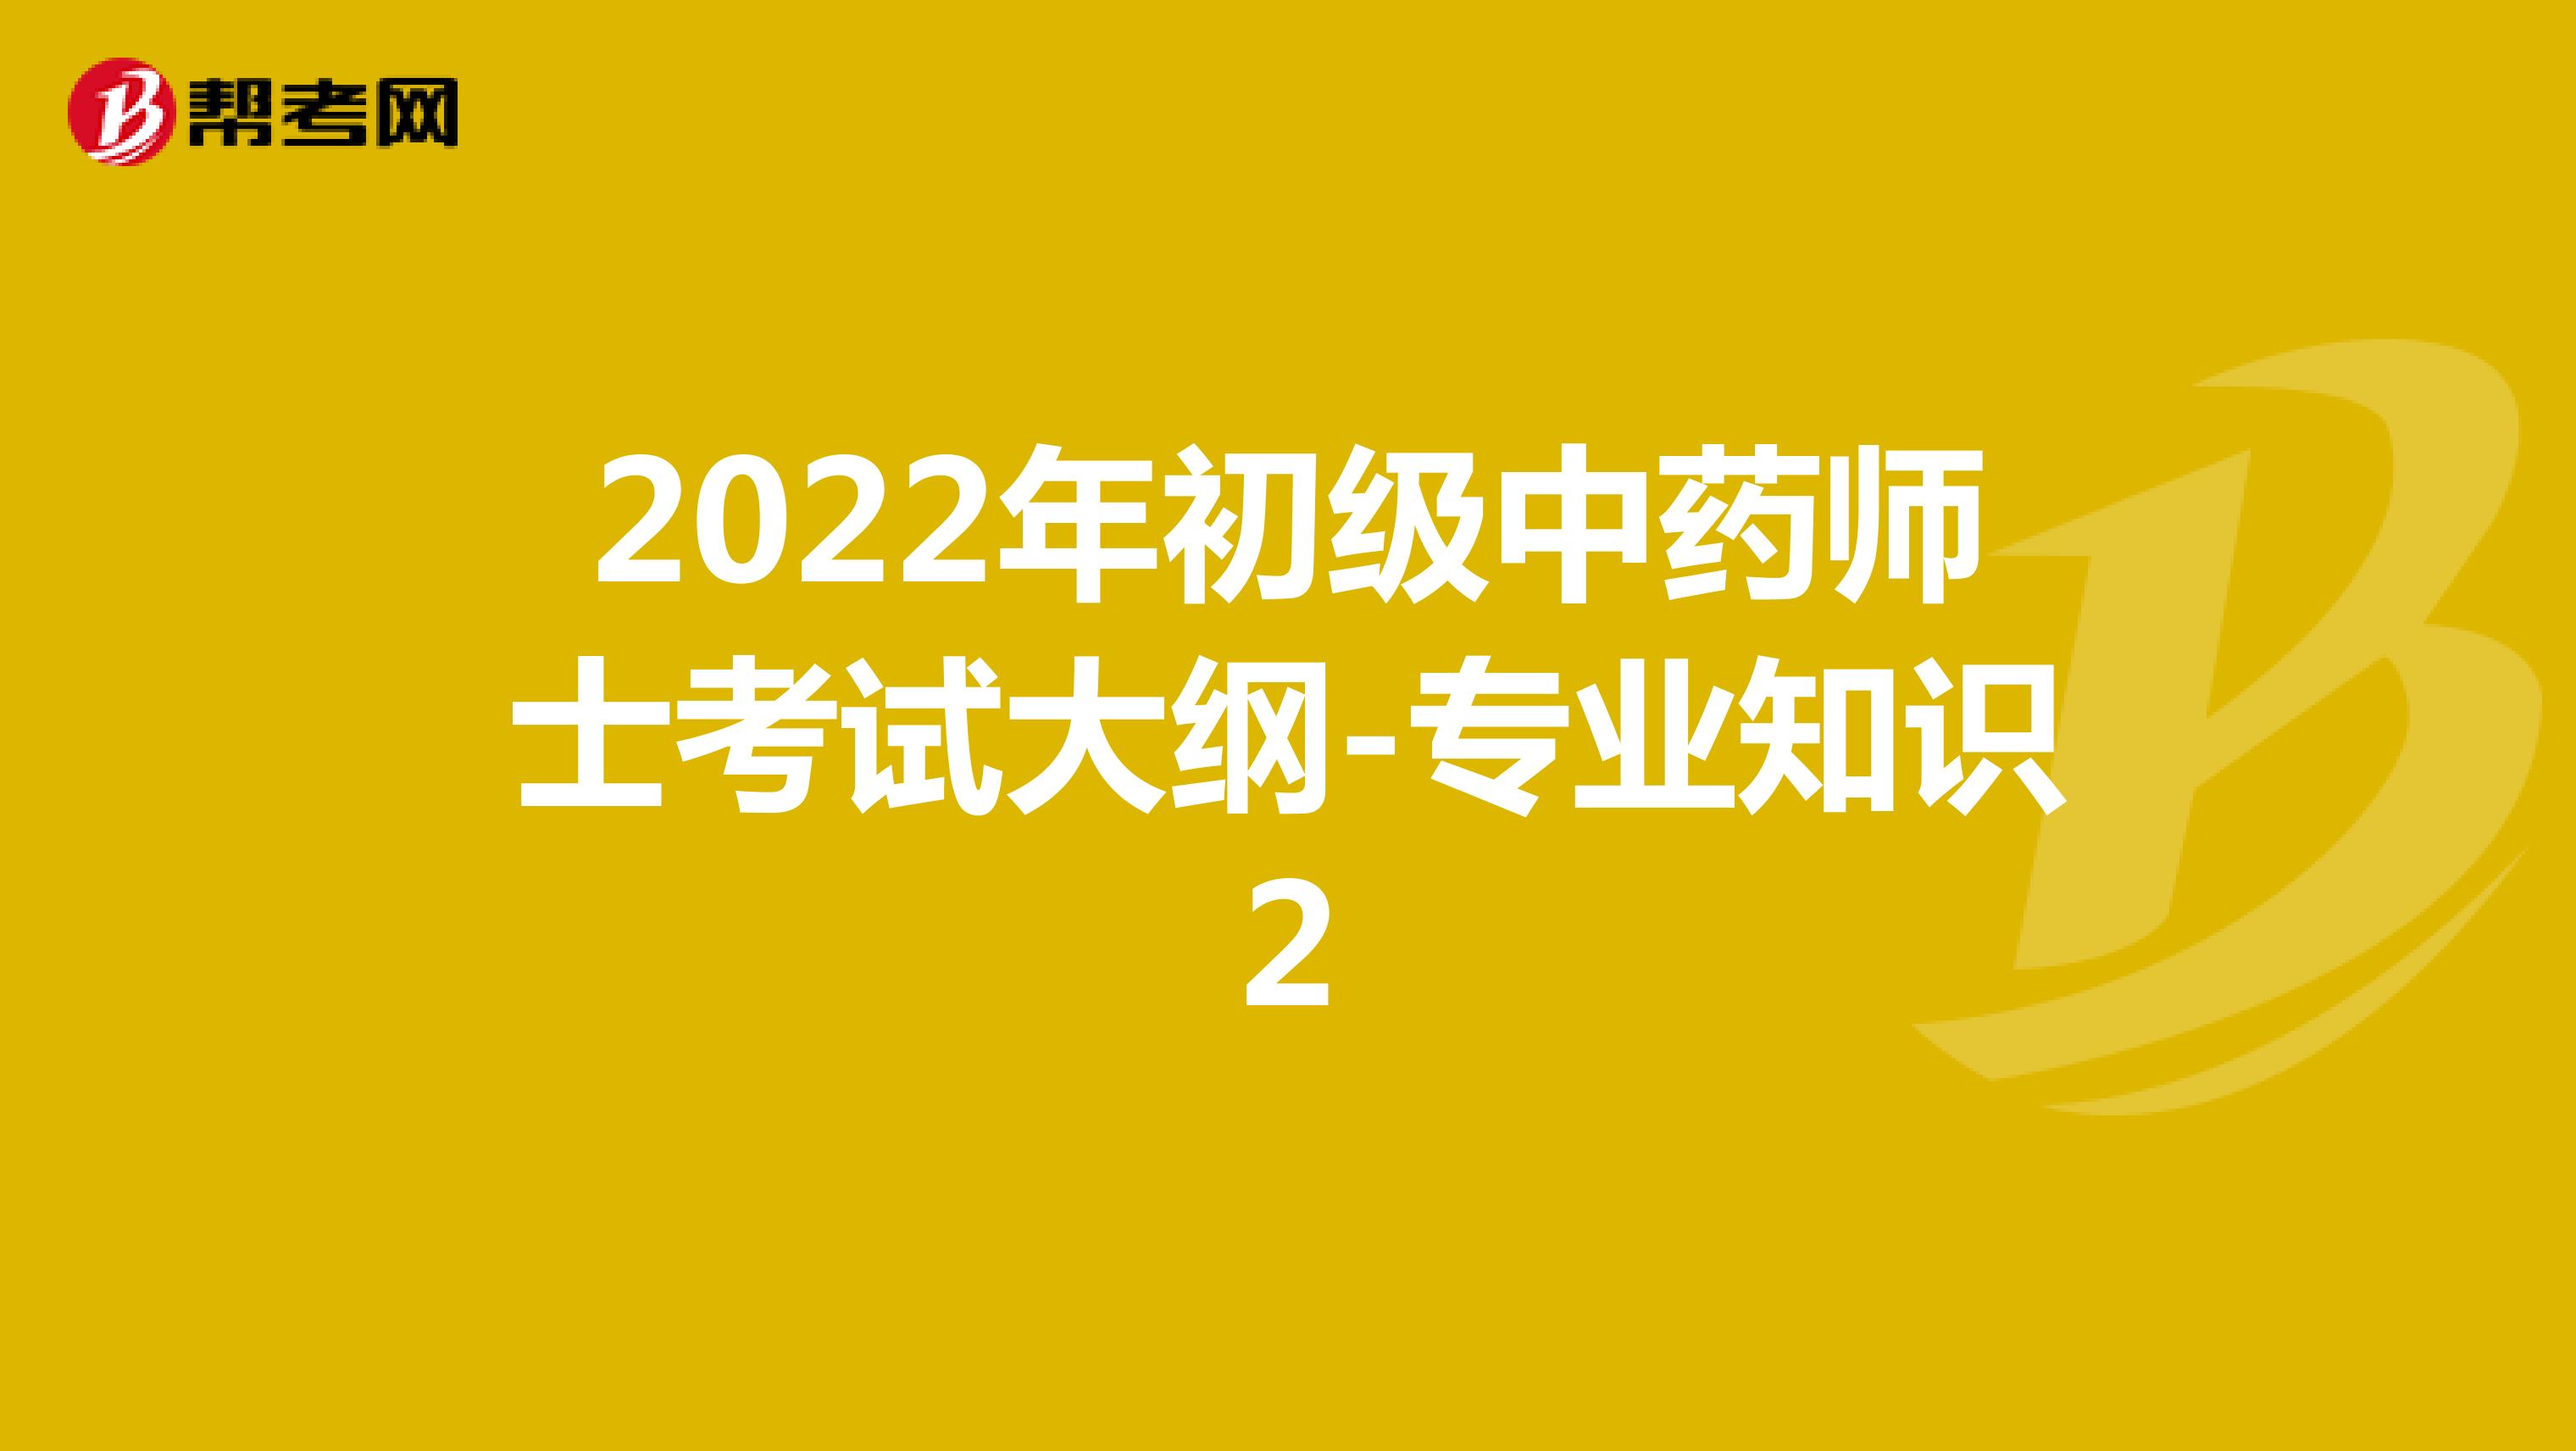 2022年初级中药师士考试大纲-专业知识2